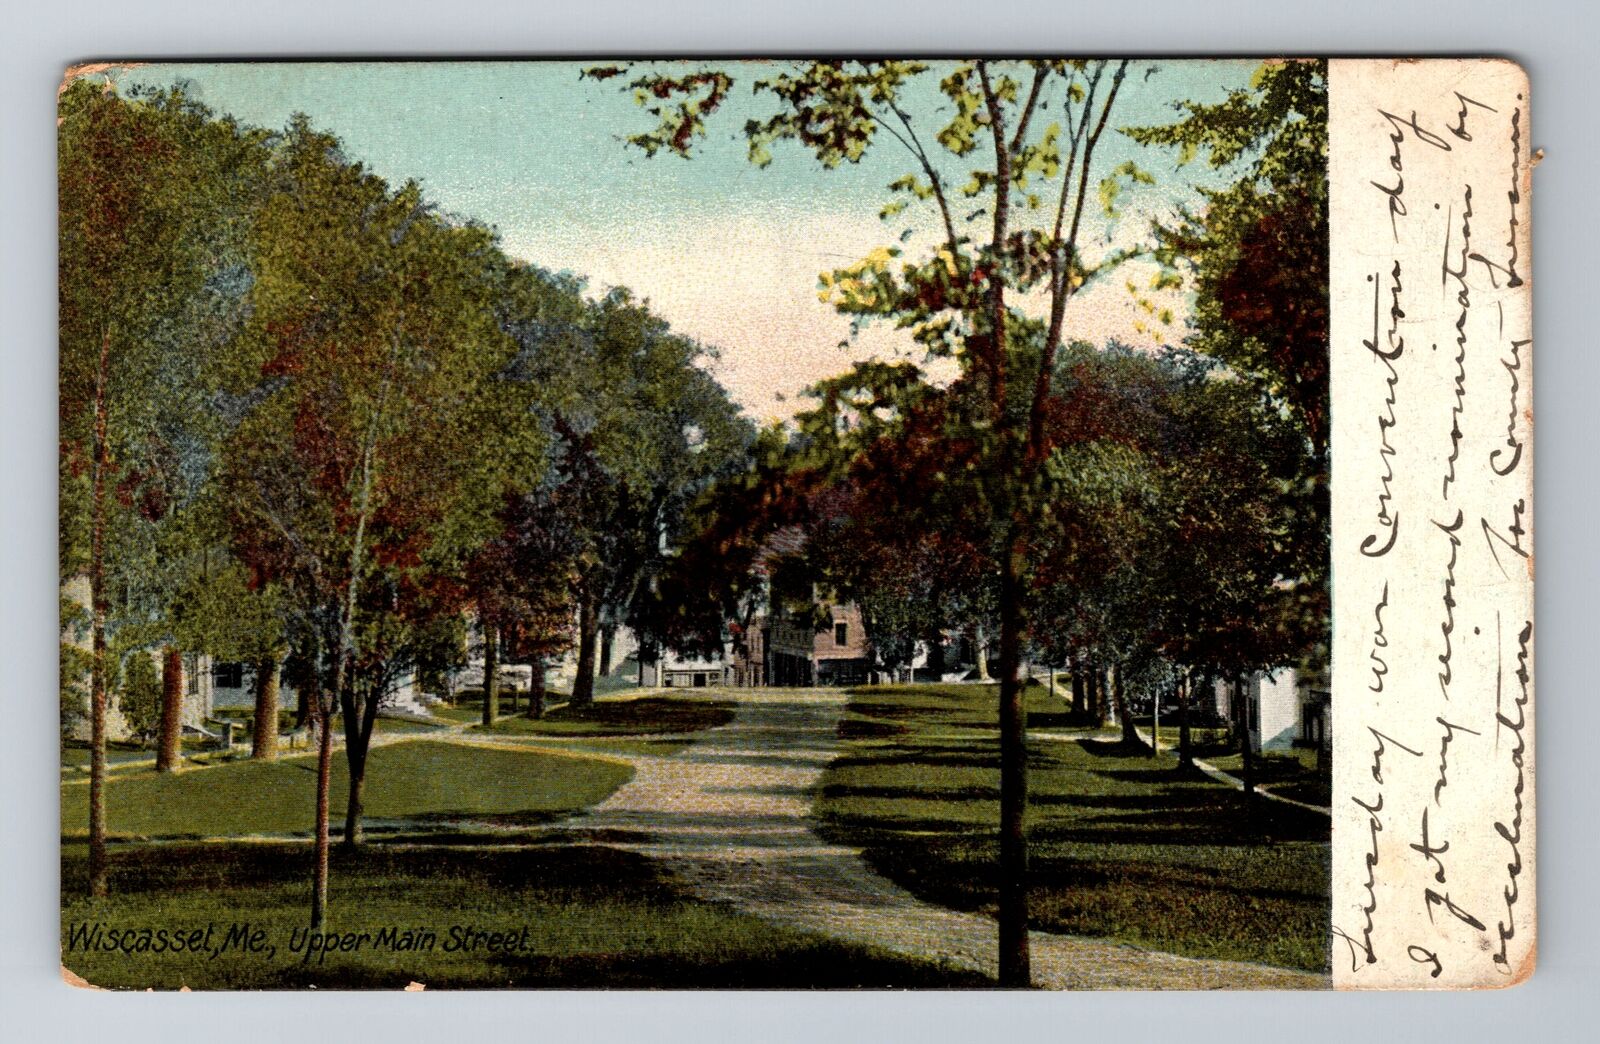 Wiscasset ME-Maine, Upper Main Street, Antique, Vintage c1910 Souvenir Postcard